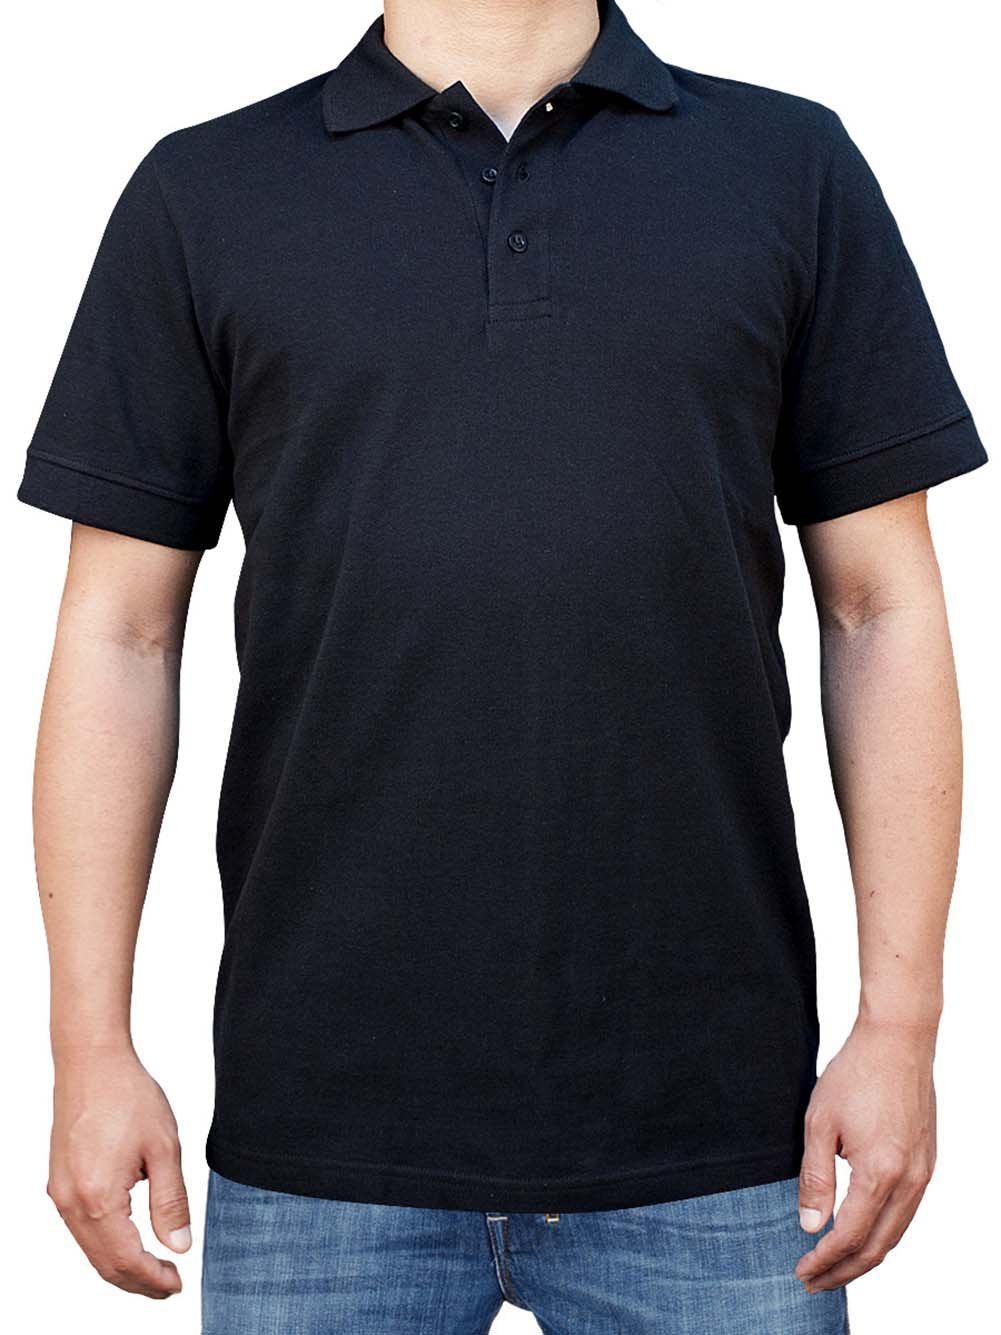 Men's Comfortable Basic 3 Button Solid Short Sleeve Pique Polo Shirt